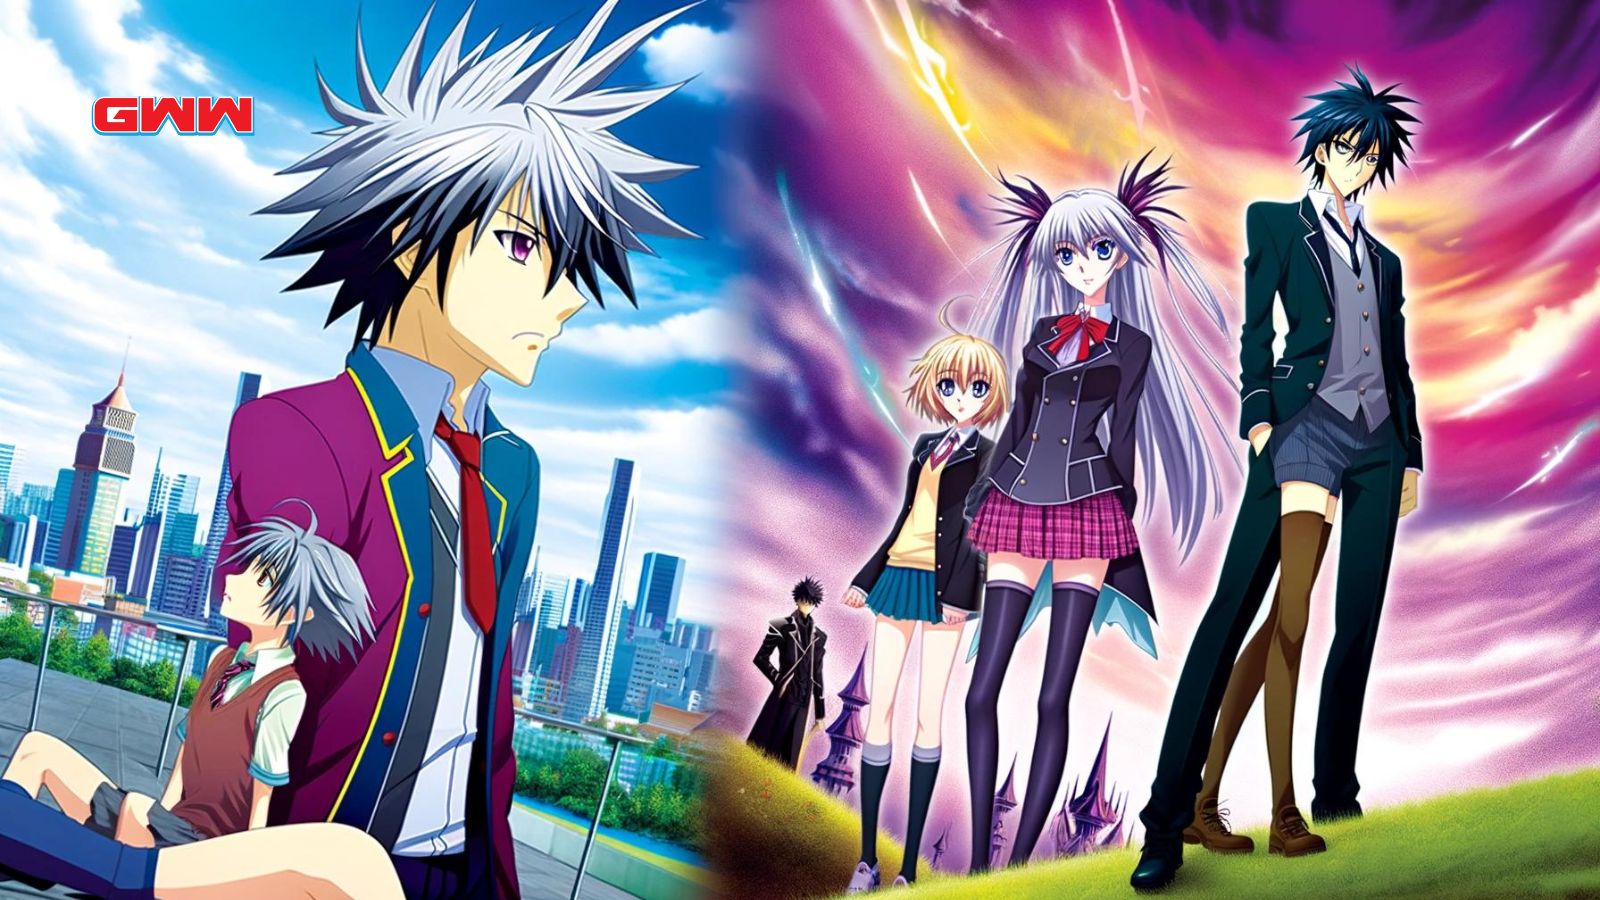 Una imagen vibrante y panorámica de estilo anime que muestra a dos parejas que a menudo son consideradas las mejores del anime.